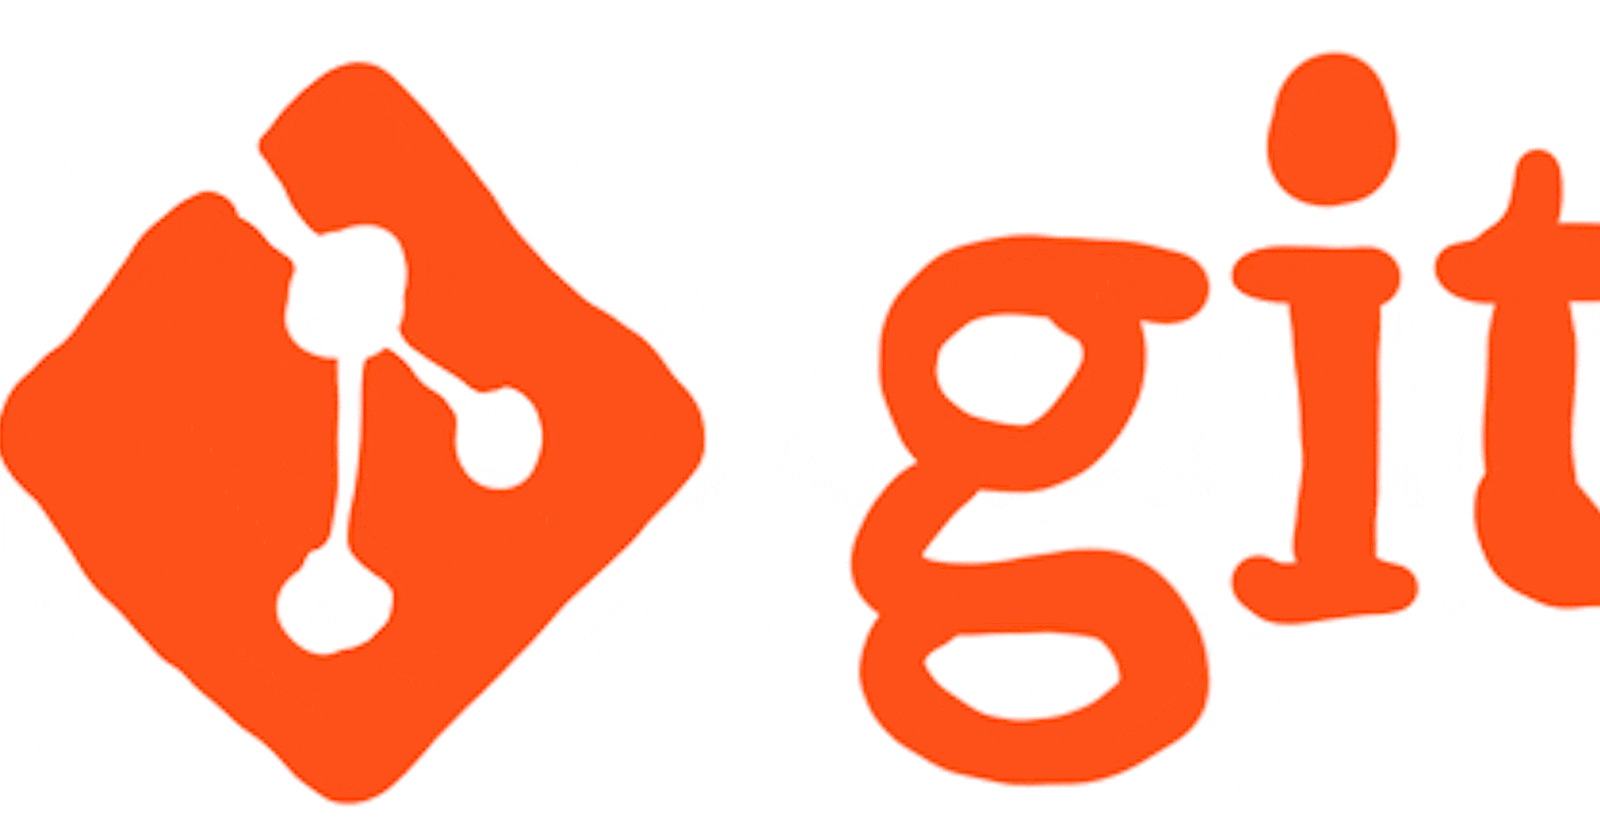 Basic Overview on Git & Git Hub